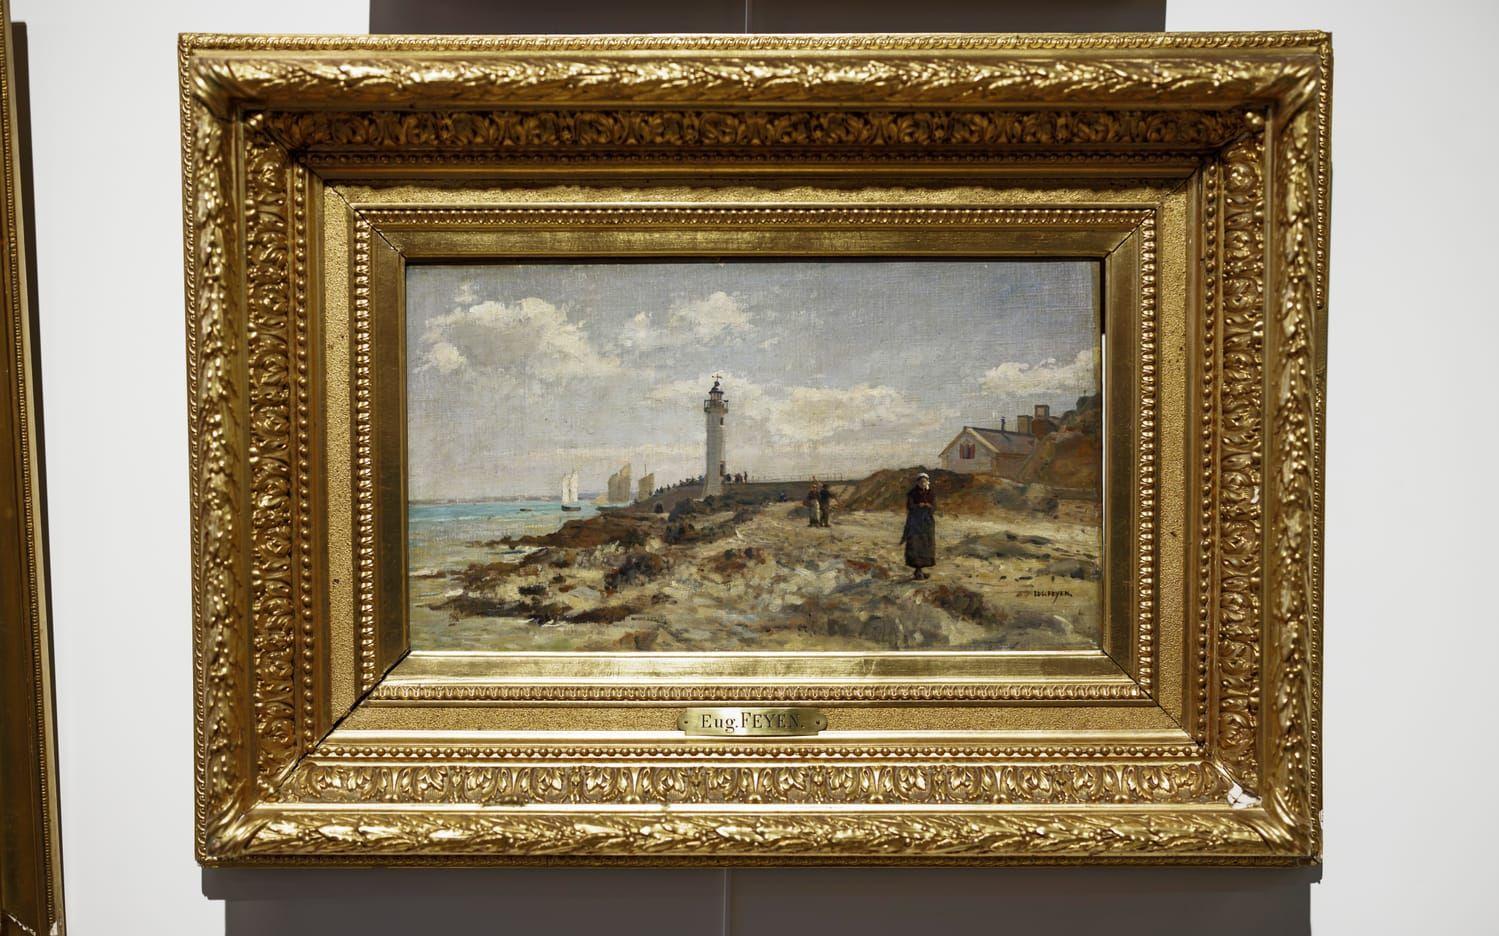 Oljemålning av Eugene Feyen värderad till 10 000 kronor. ”Kusligt bra måleri”, enligt Kristoffer Tilgman.